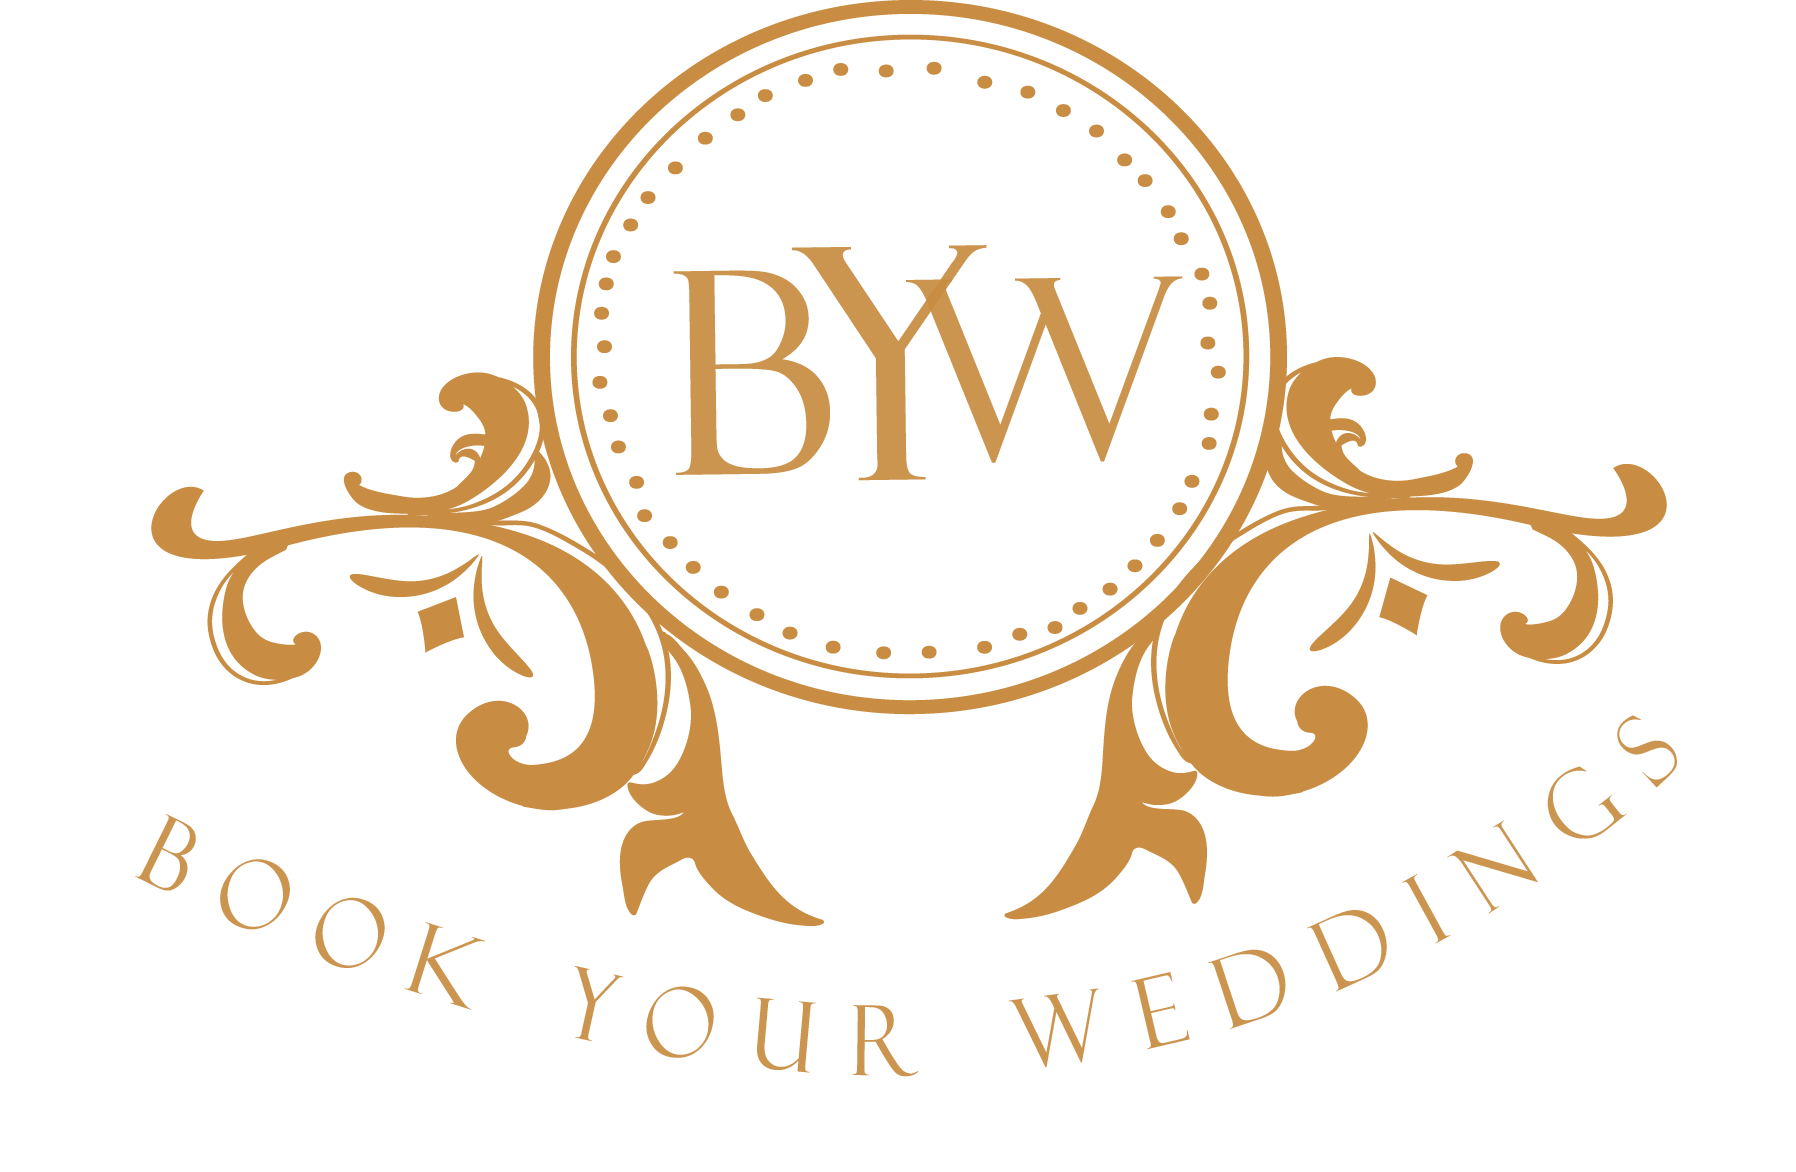 Book Your Weddings Logo 